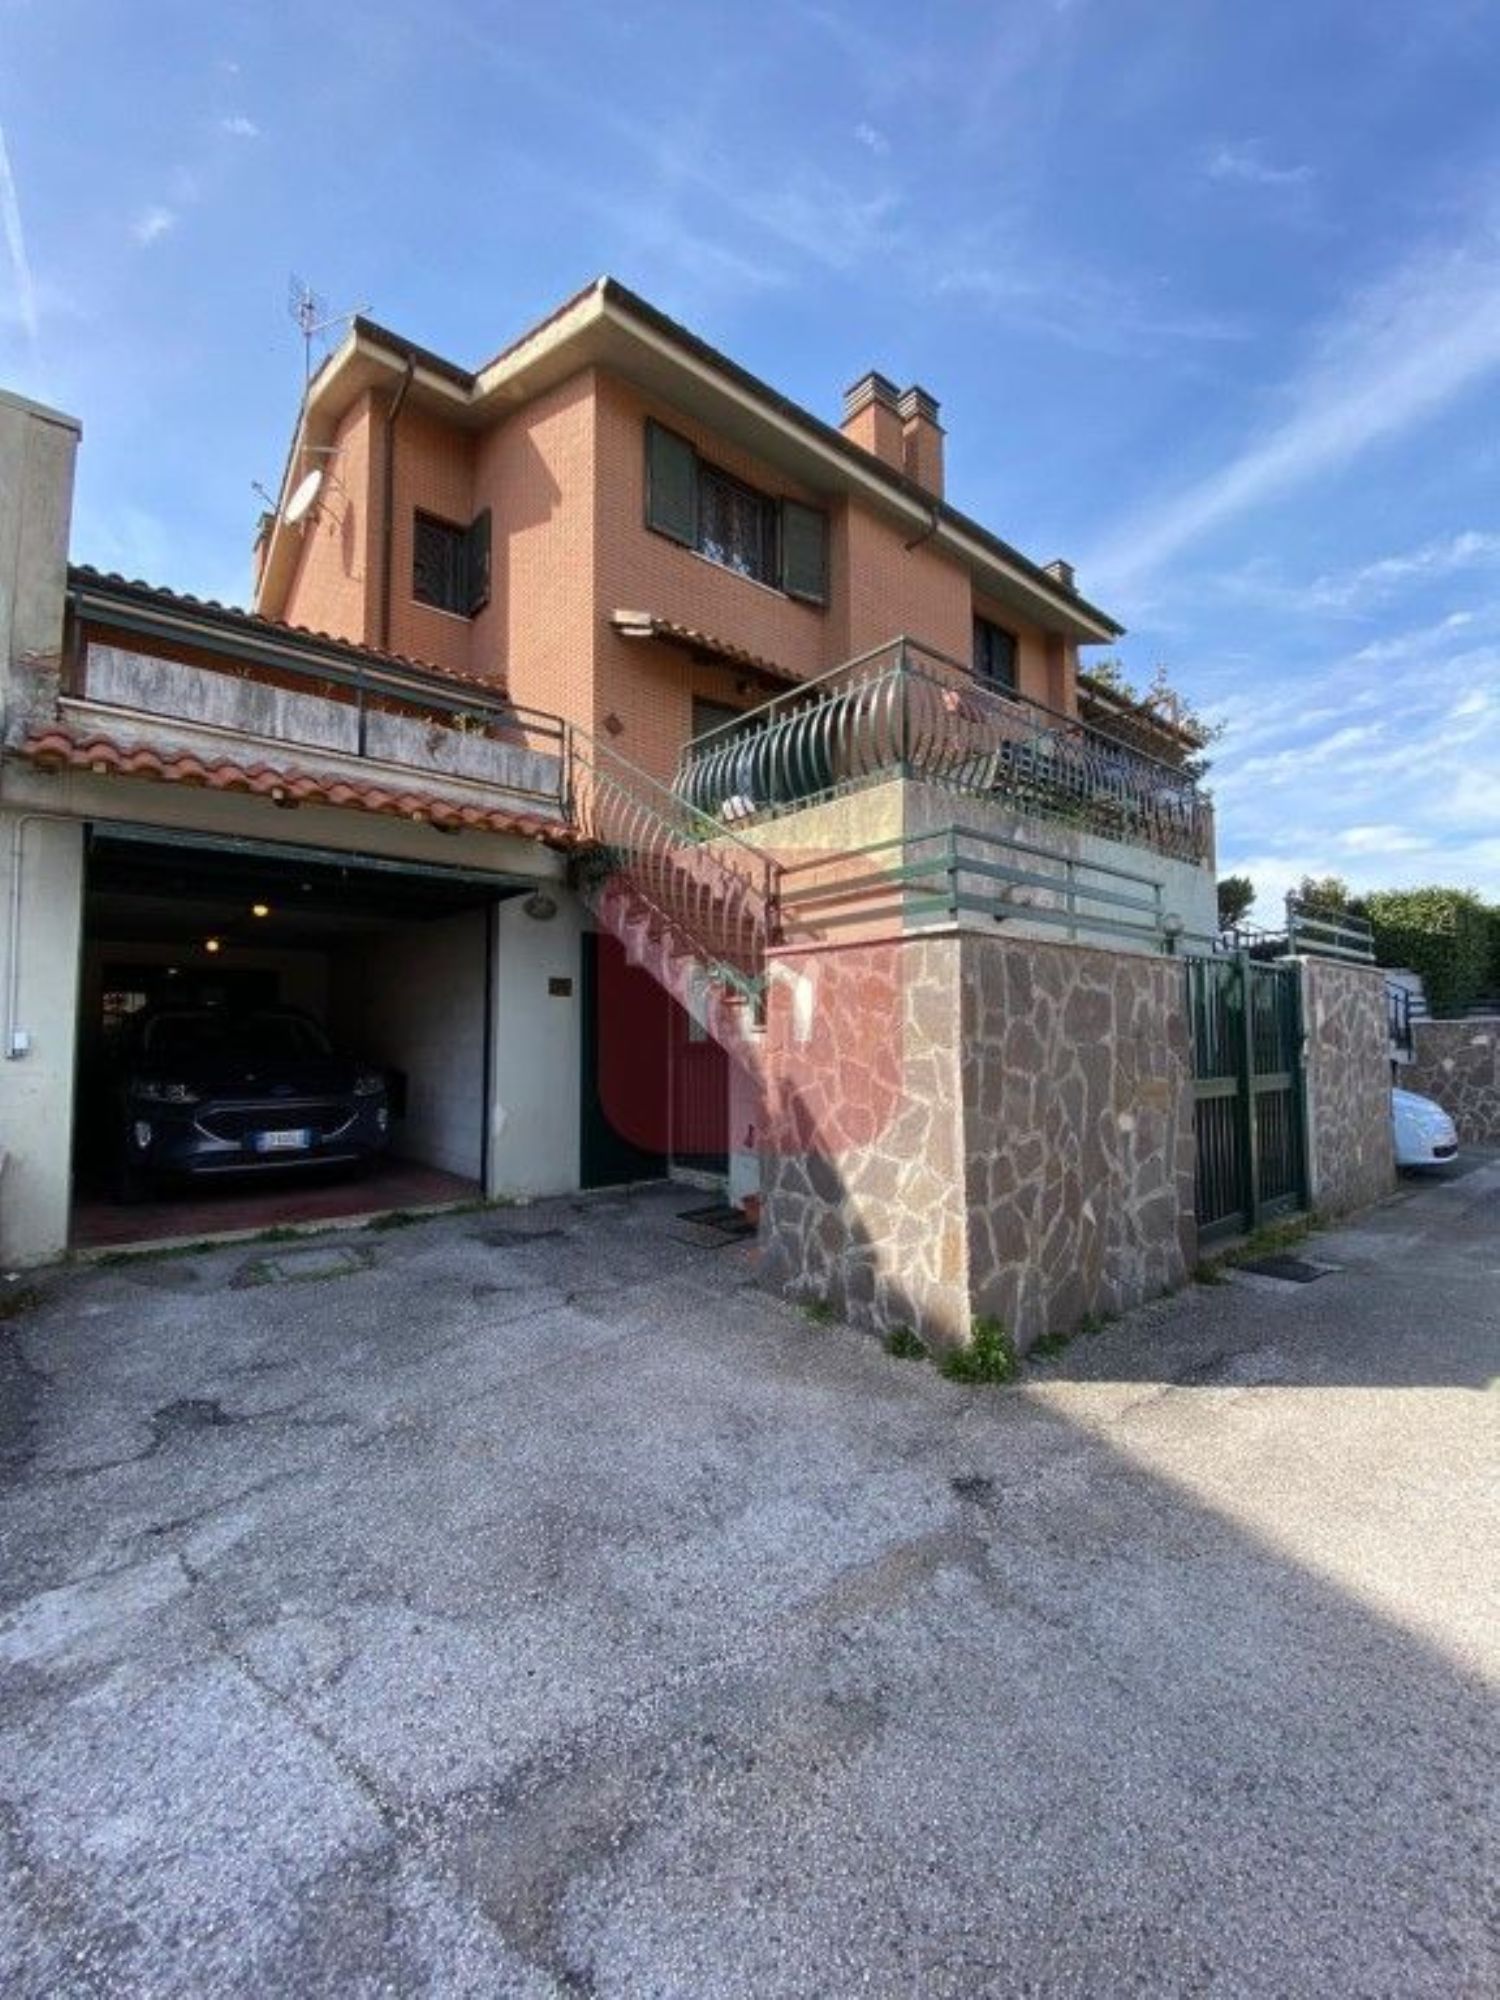 Villa a Schiera in vendita a Labico, 4 locali, prezzo € 199.000 | CambioCasa.it